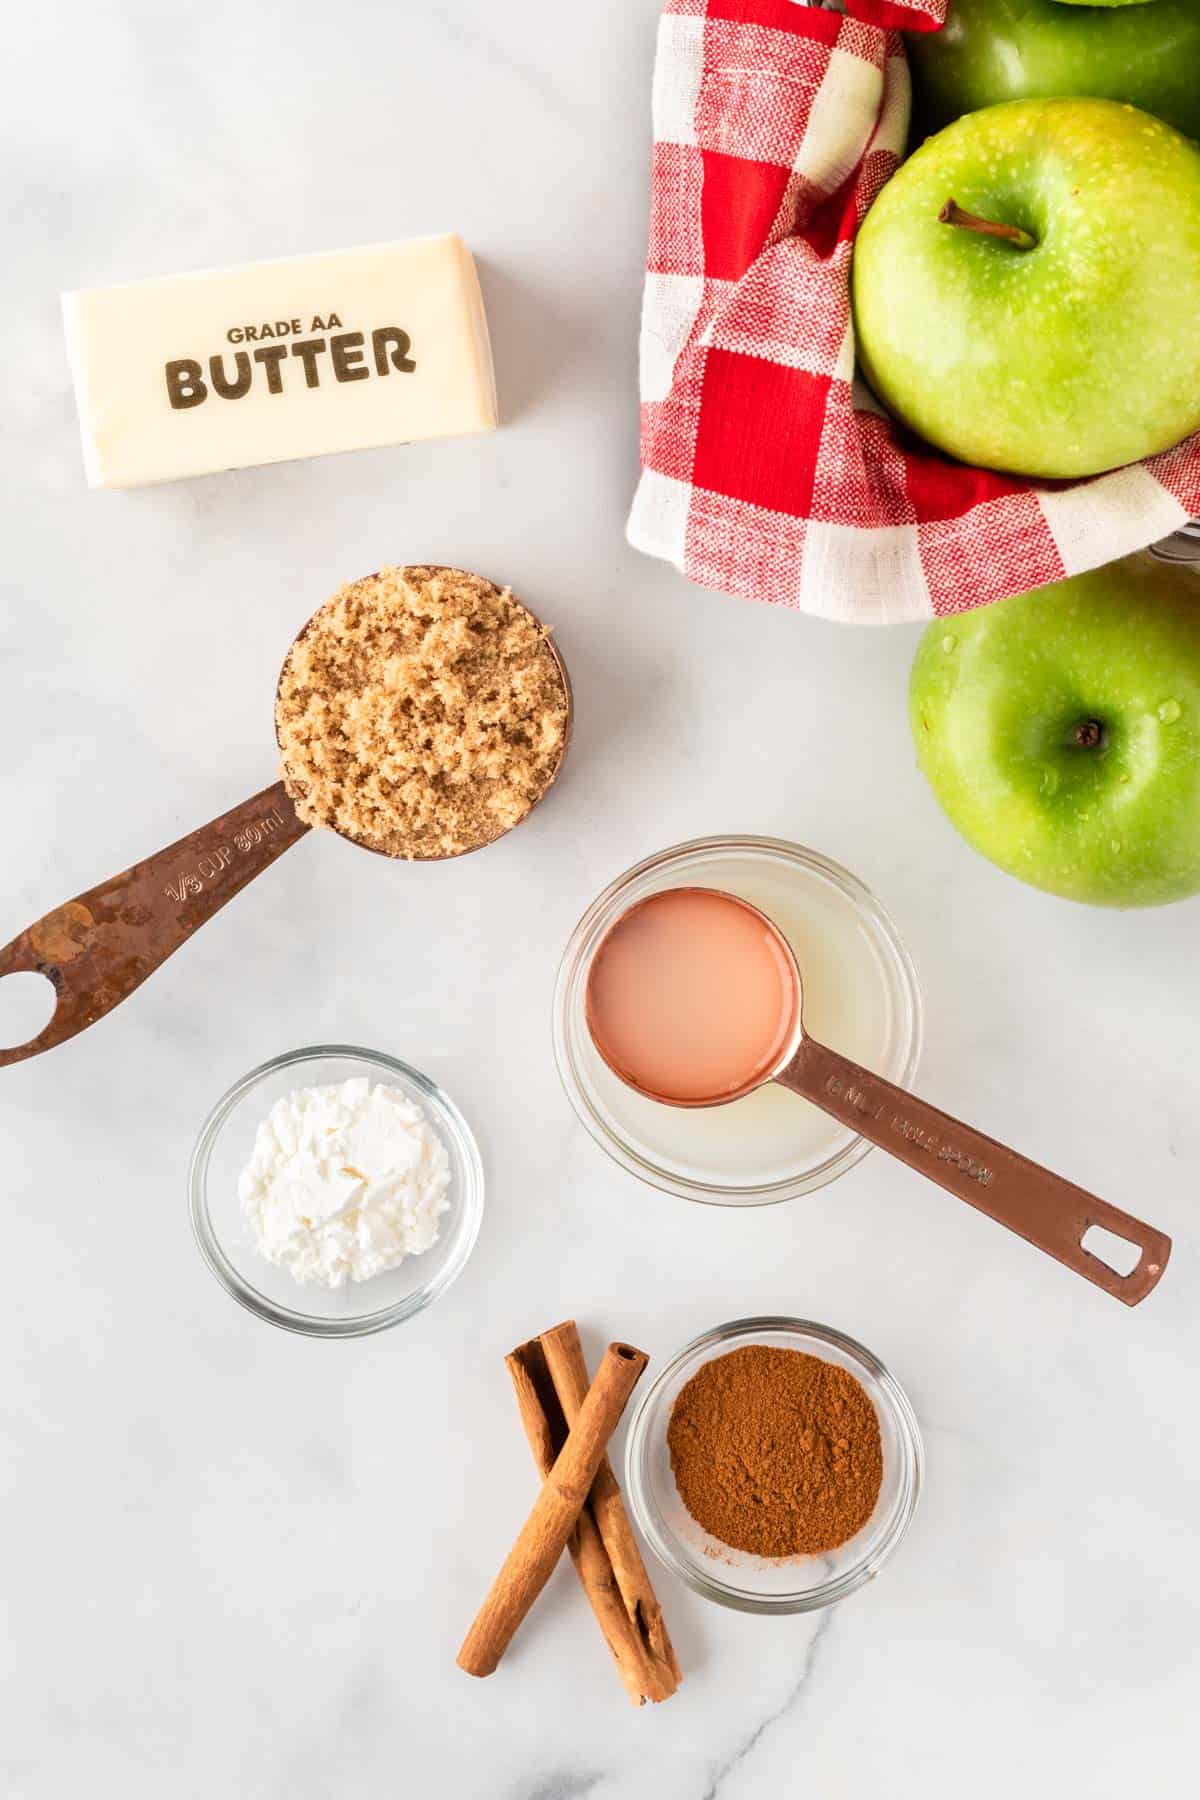 ingredients needed to make baked cinnamon apples